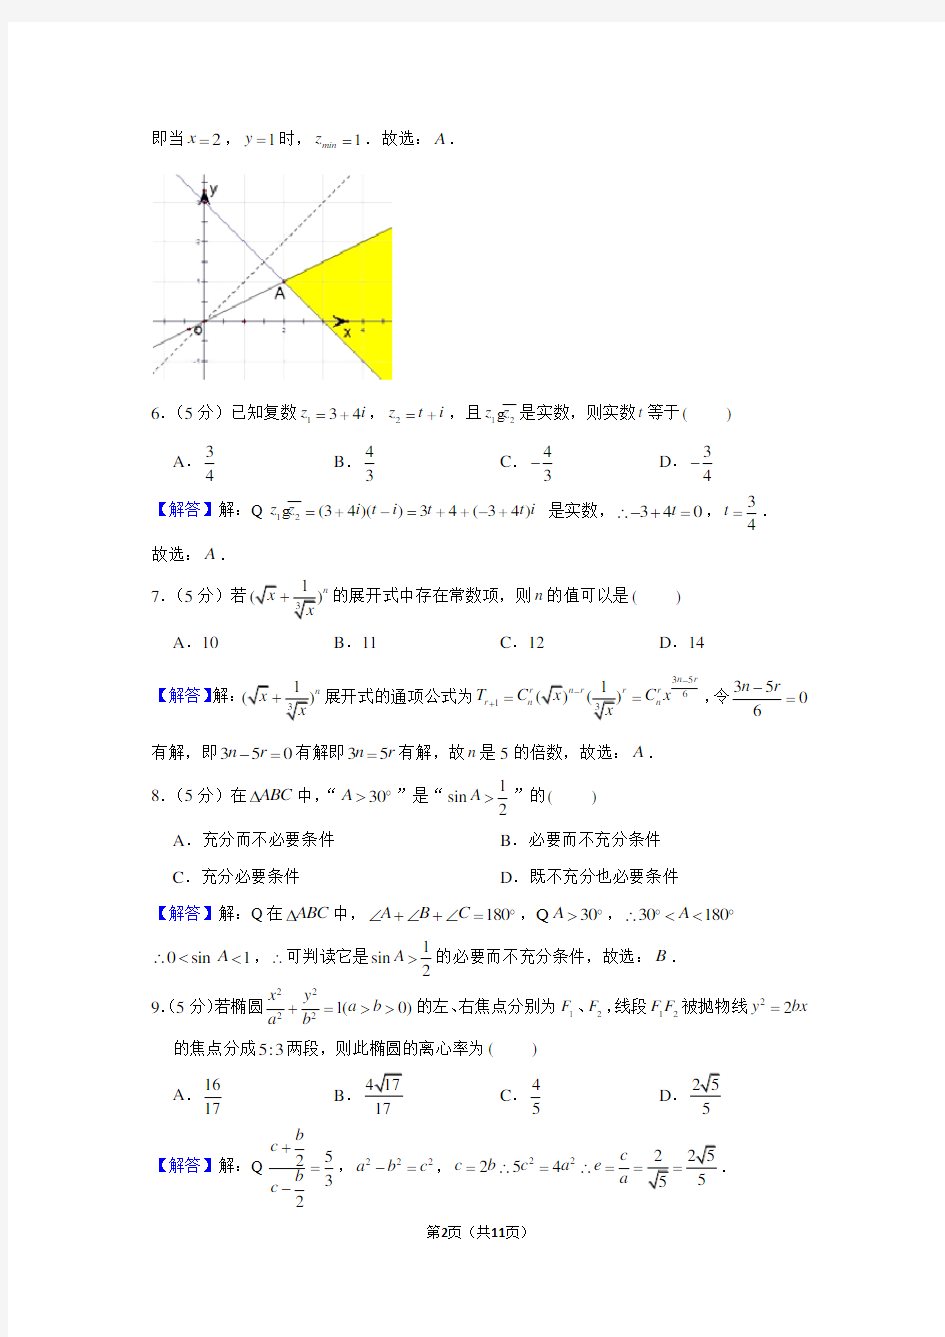 【高考试题】2004年浙江省高考数学试卷(理科)及答案